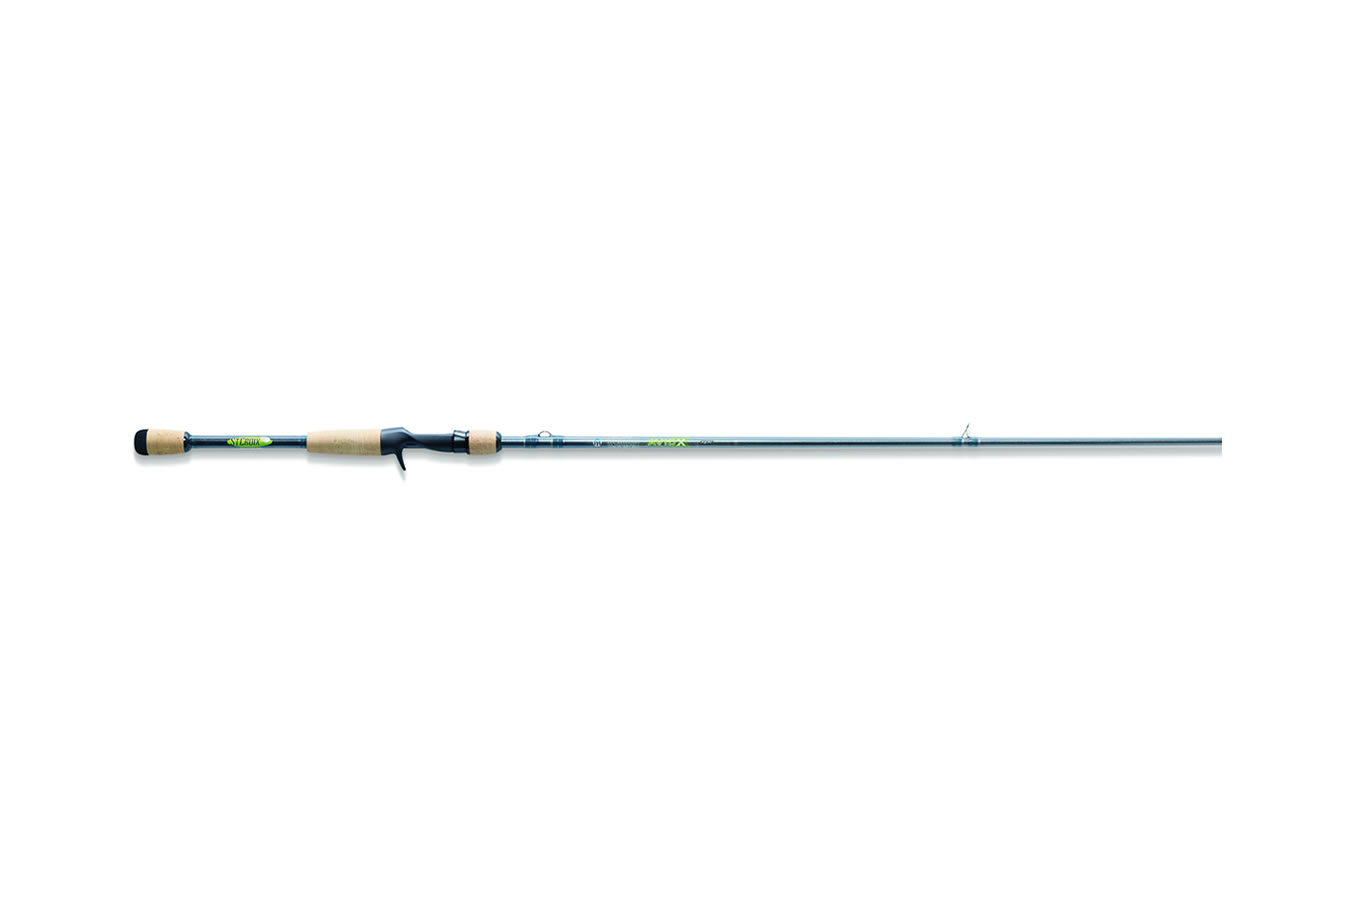 St Croix Avid X 6 ft 8 in - Medium Heavy Casting Rod